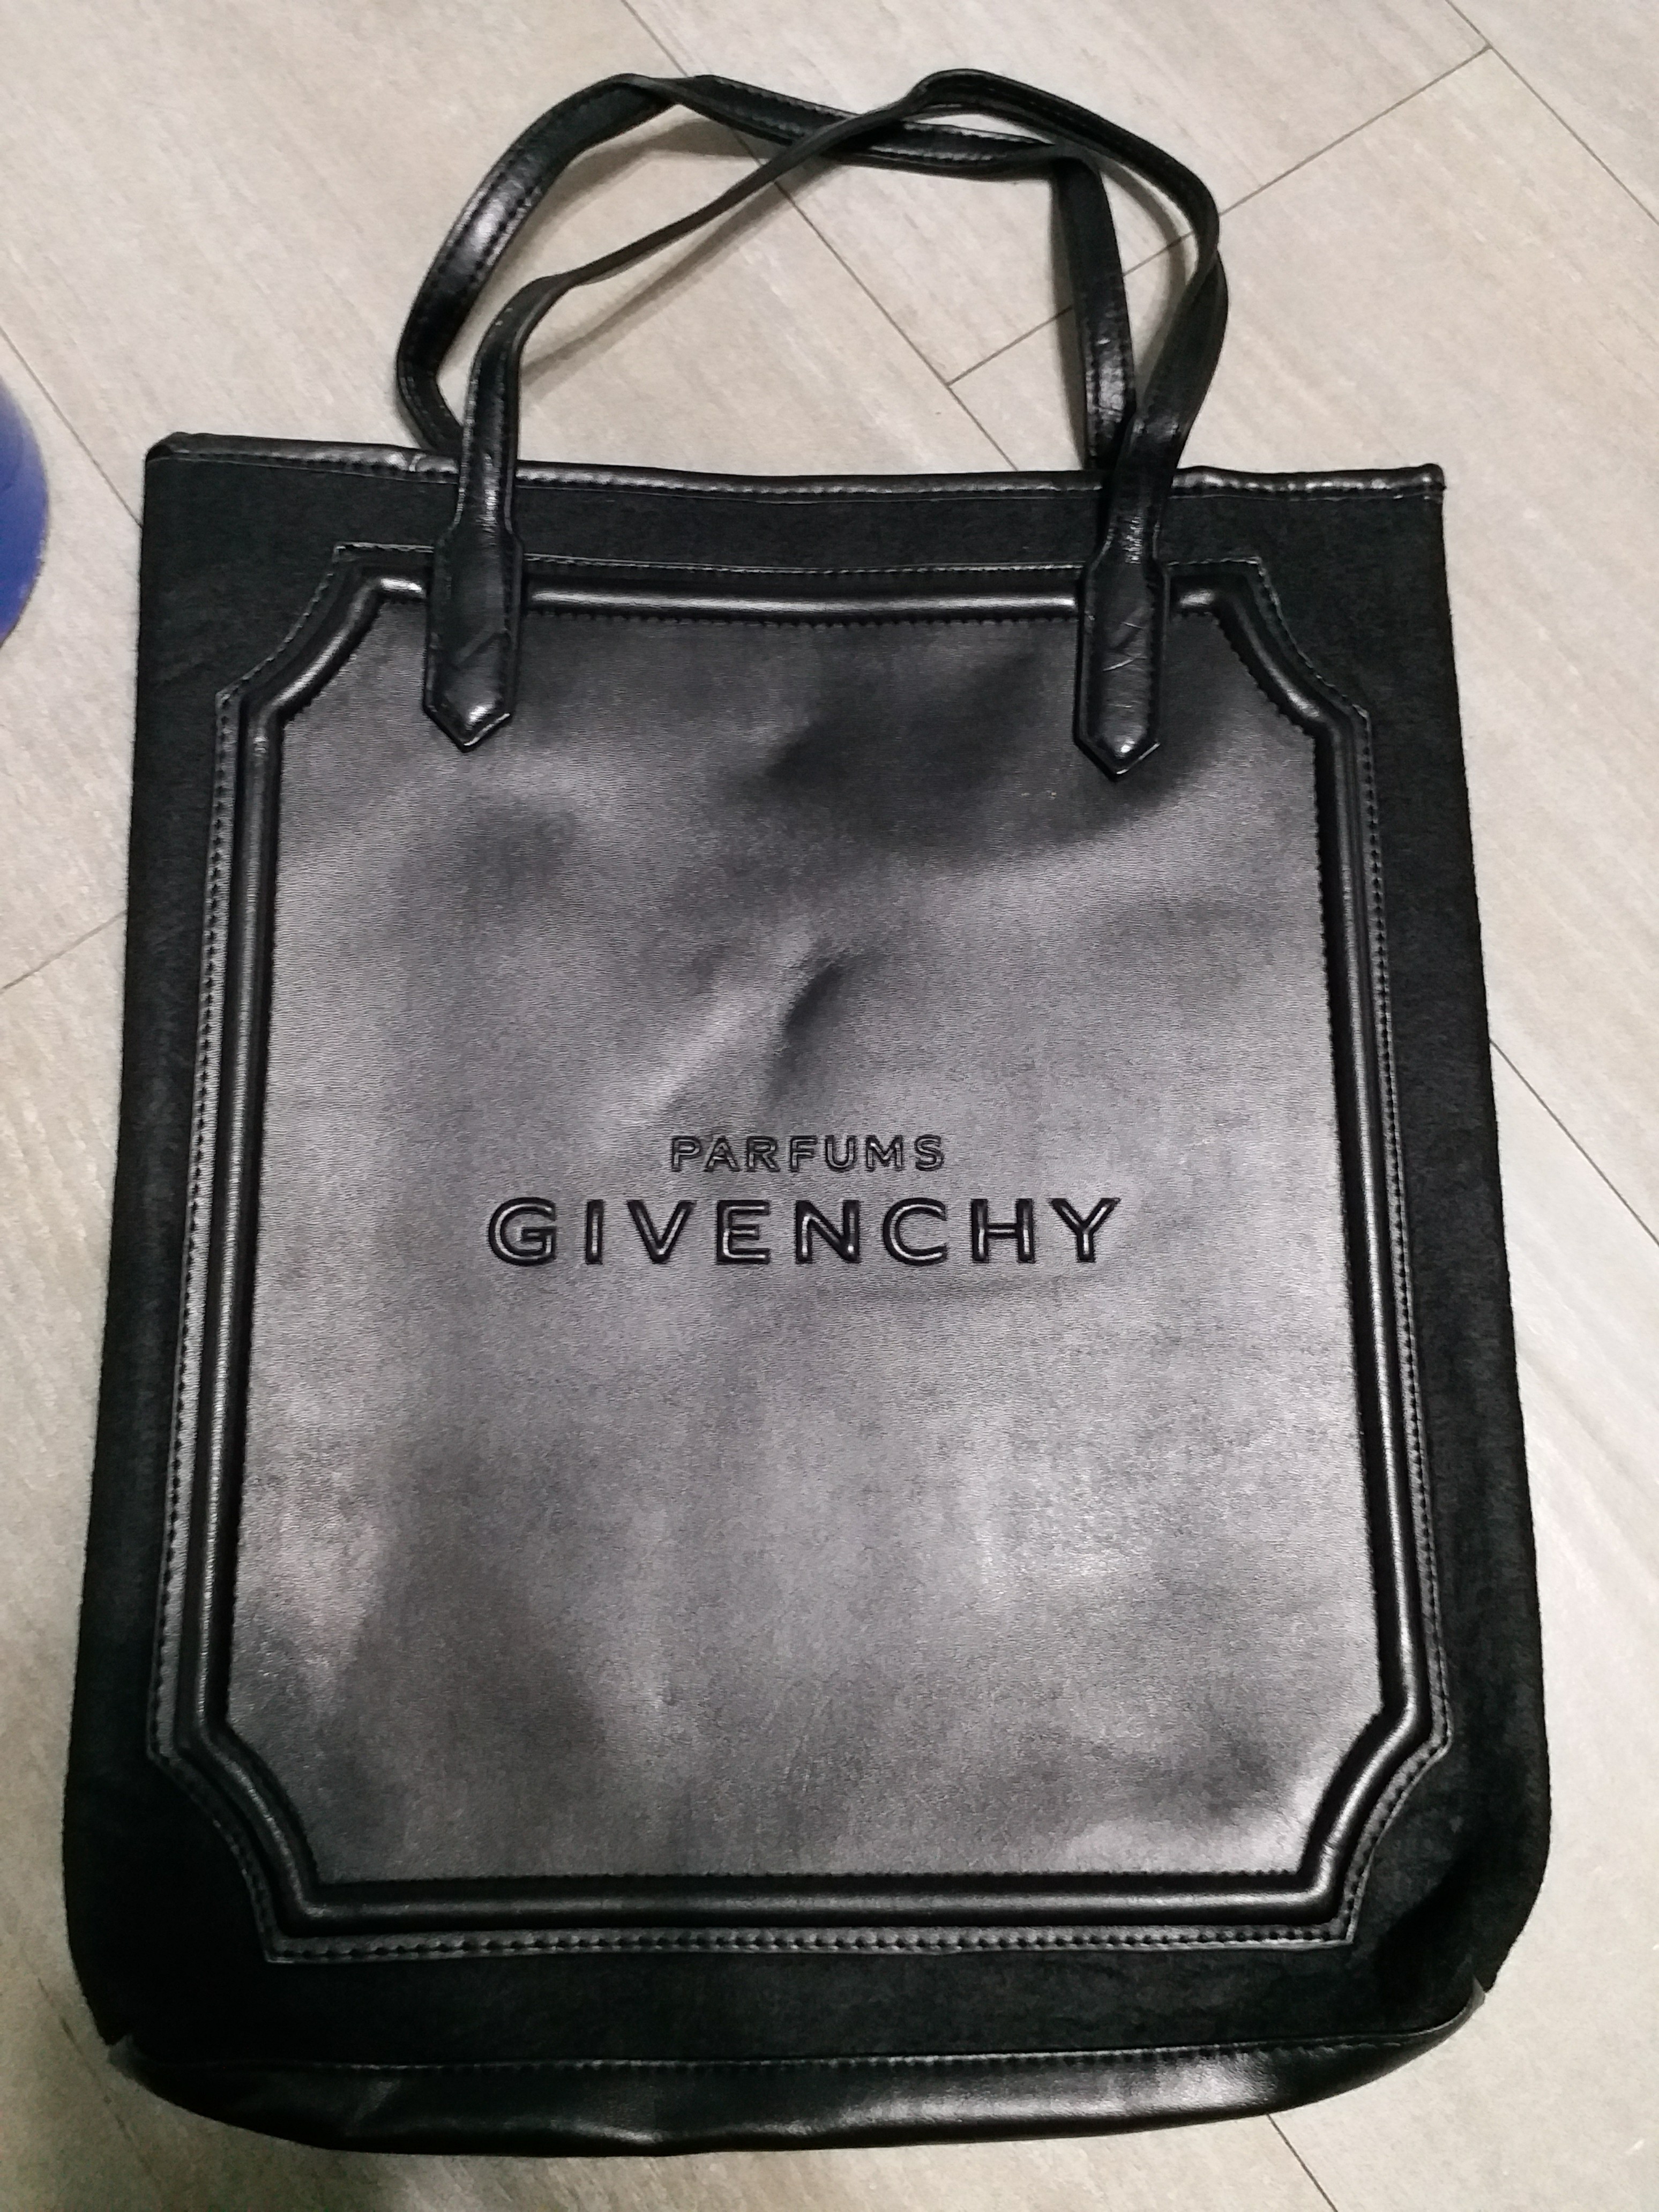 givenchy perfume bag